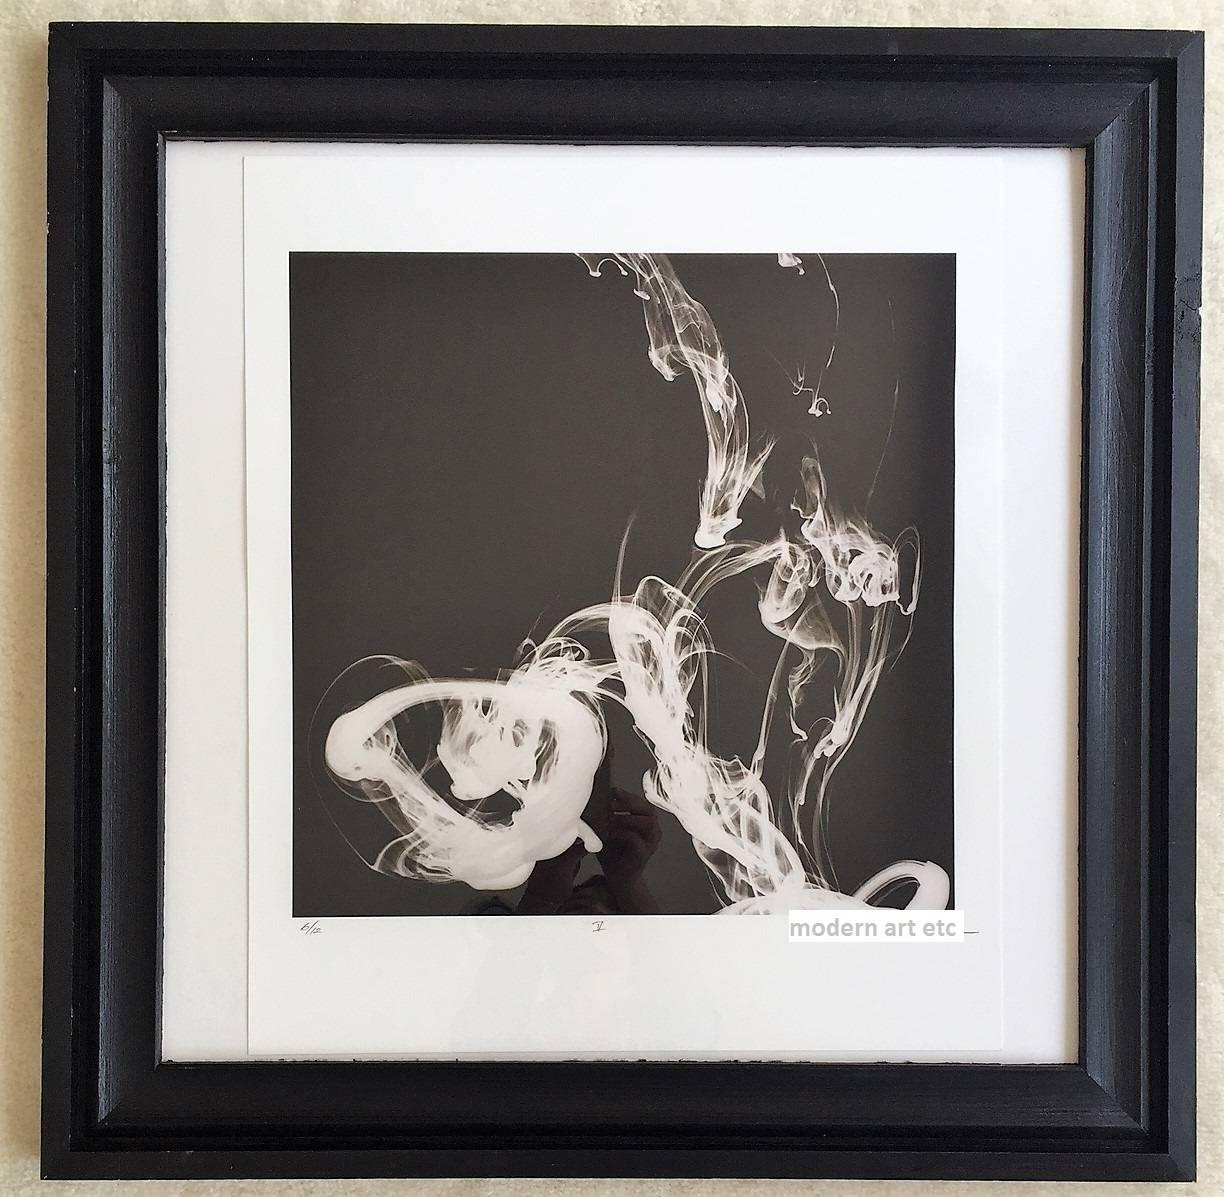 Photographie d'art abstraite en noir et blanc - encadrée dans un cadre en bois fait sur mesure